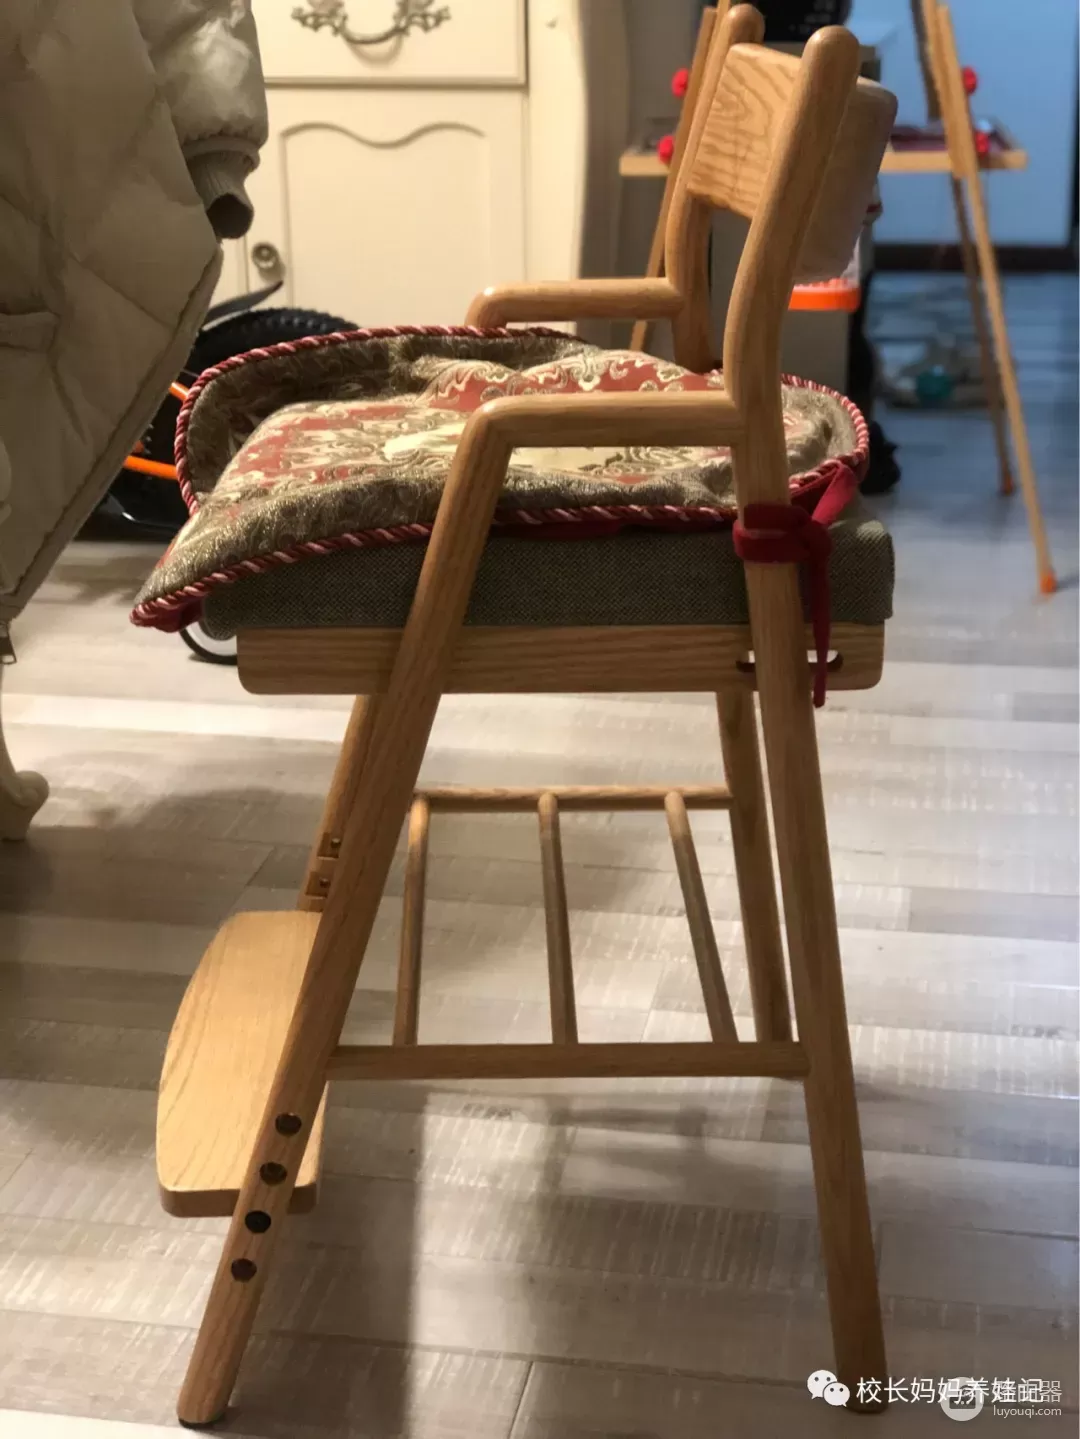 我决定把家里的椅子都换了(我决定把家里的椅子都换了英文)